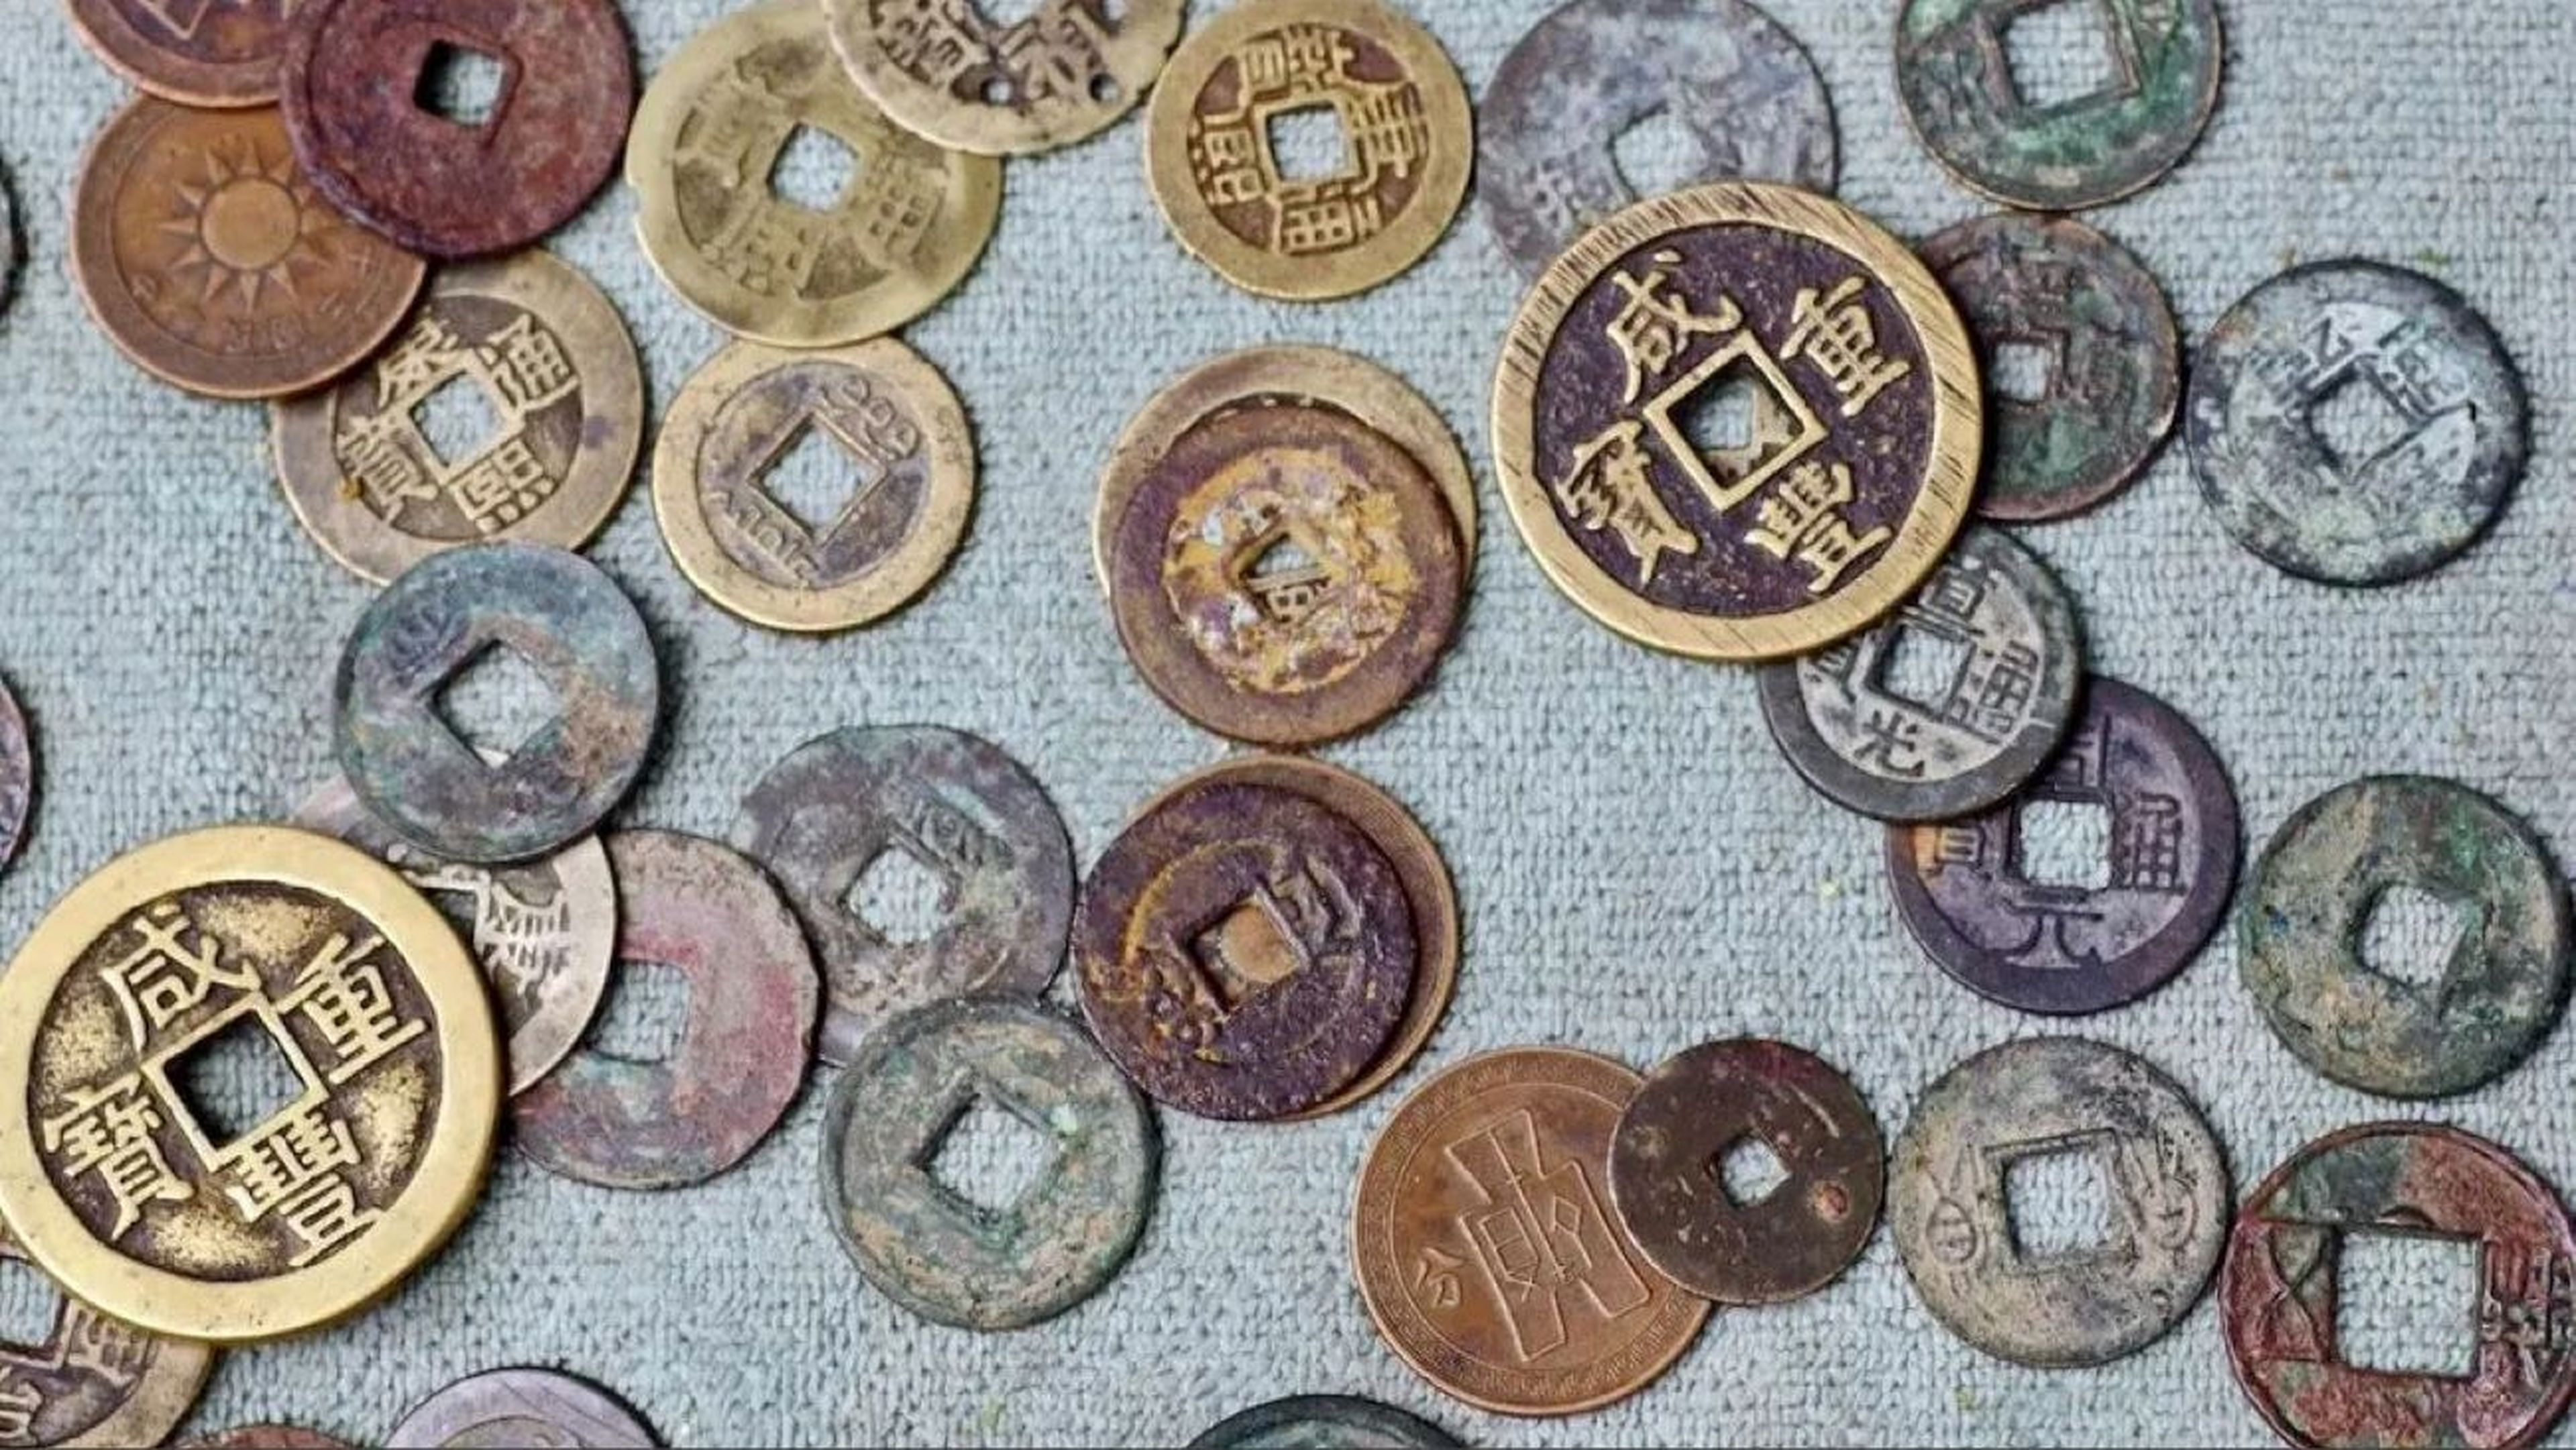 Científicos descubren en Japón un tesoro de 100.000 monedas chinas antiguas (no son las de esta foto).